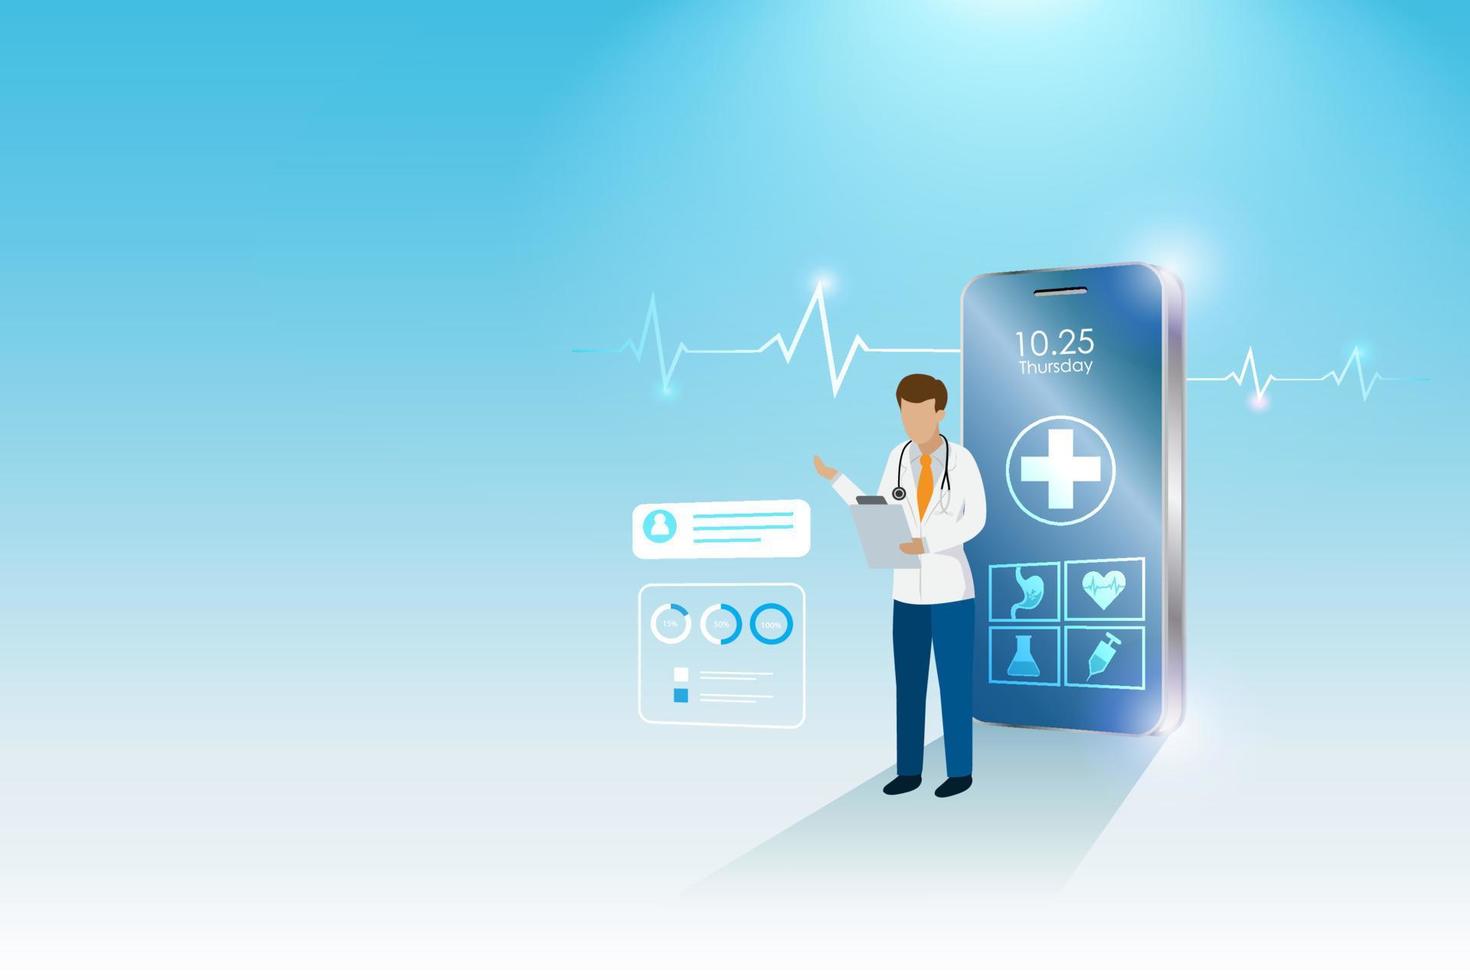 virtuell läkare, onlinesjukhus, onlinekonsultation. läkare på smartphone diagnos patientens hälsoproblem. medicinsk service och sjukvårdsinnovationsteknologikoncept. vektor